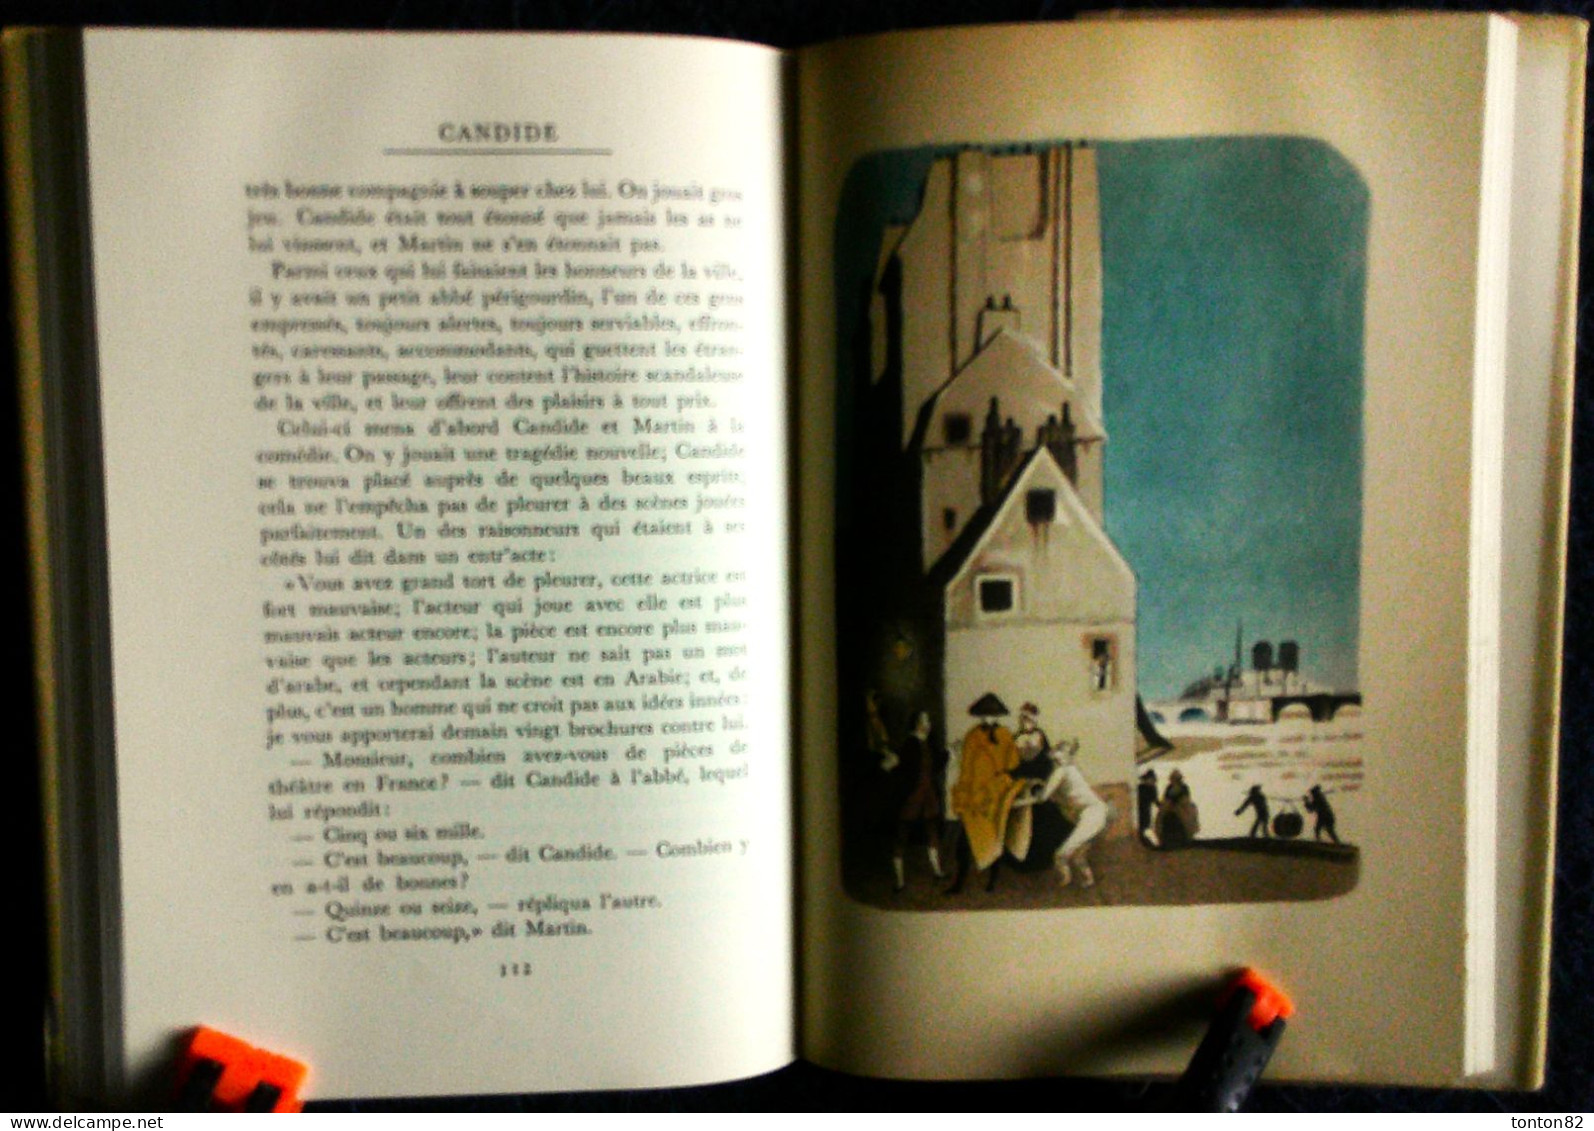 Voltaire - CANDIDE - Éditions Jean FÖRLAG - ( 1946 ) - Édition illustrée en couleurs .